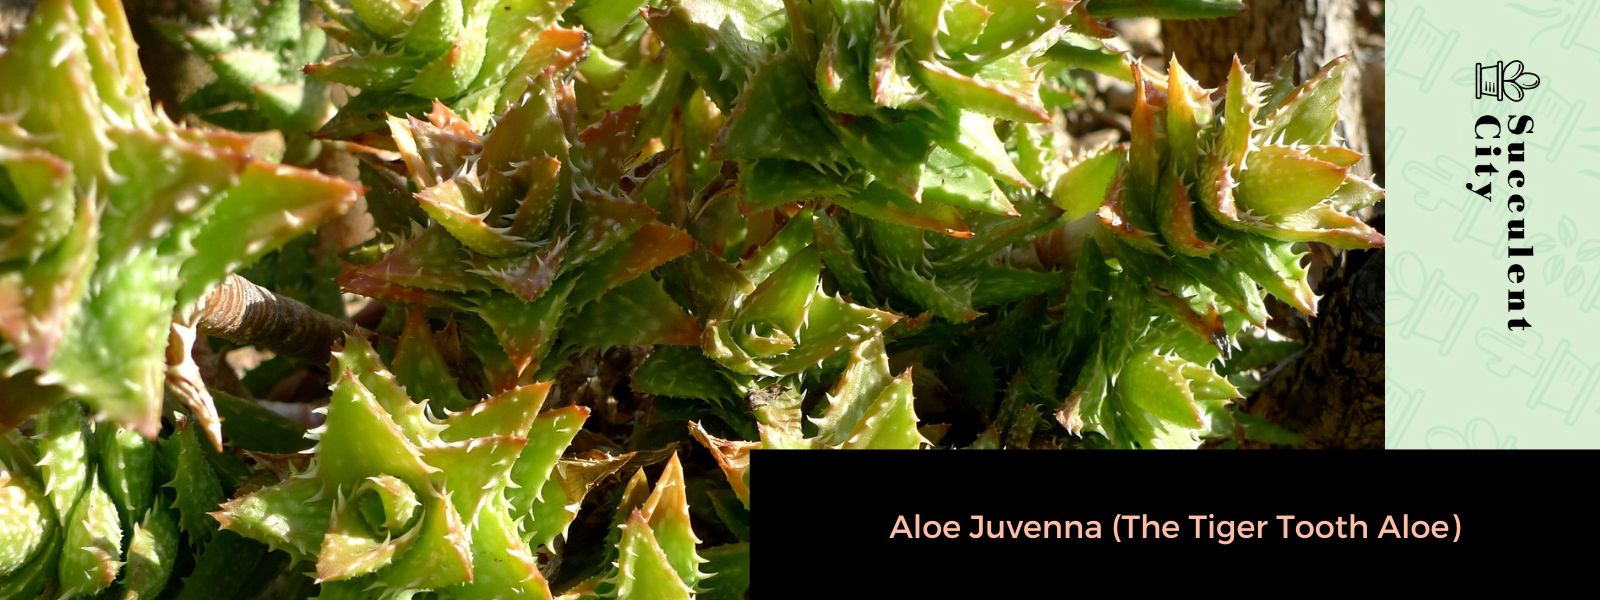 Aloe Juvenna (El aloe diente de tigre)